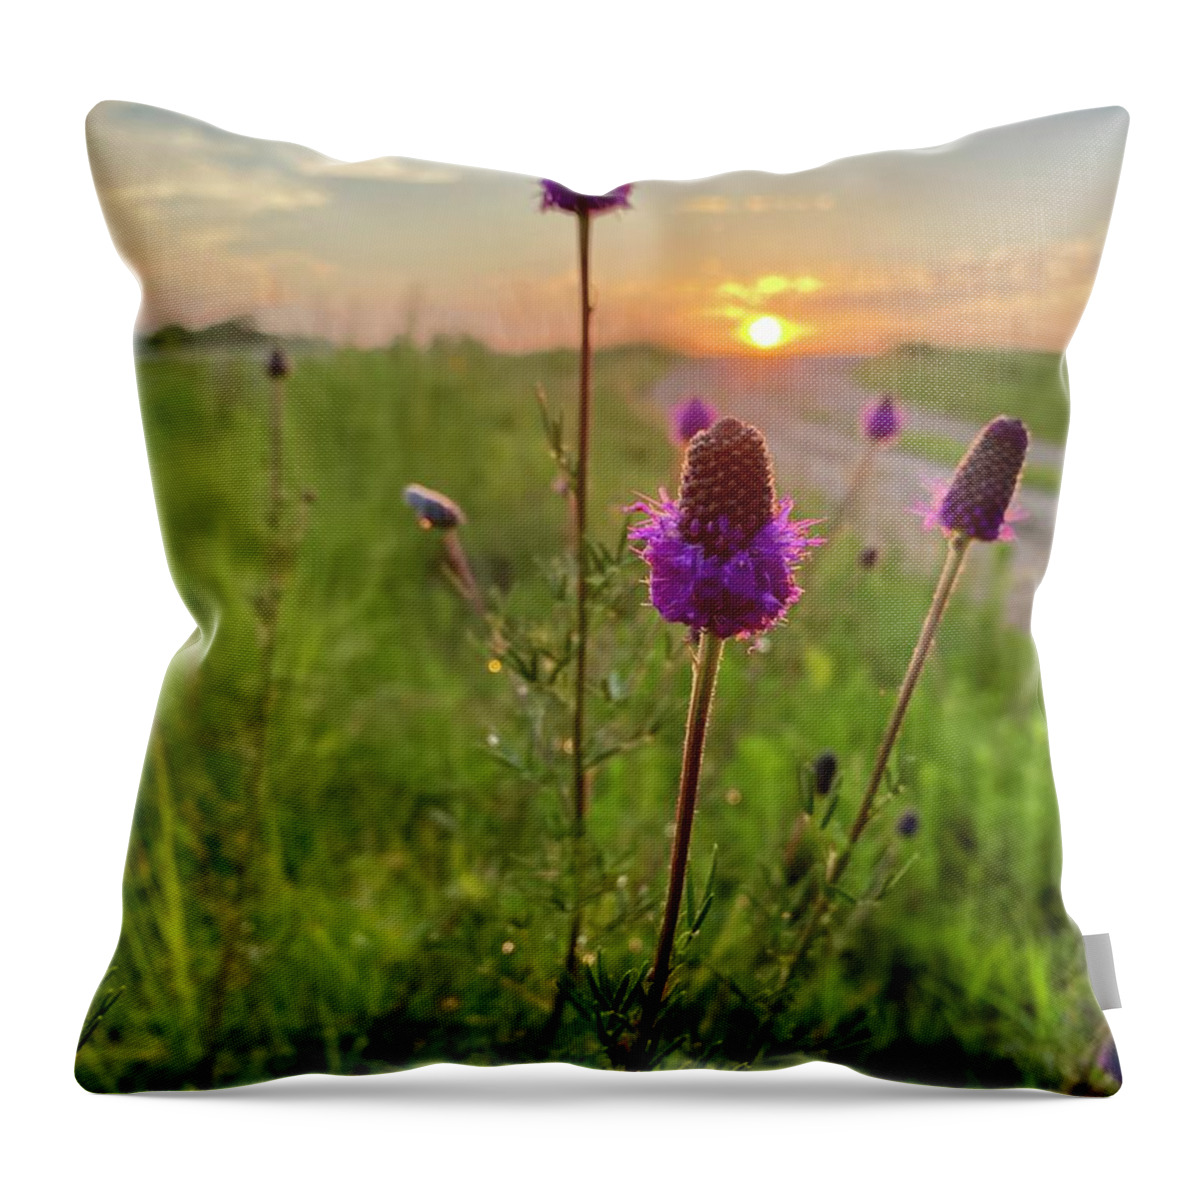 Purple Prairie Clover Throw Pillow featuring the photograph Purple Prairie Clover by Alex Blondeau